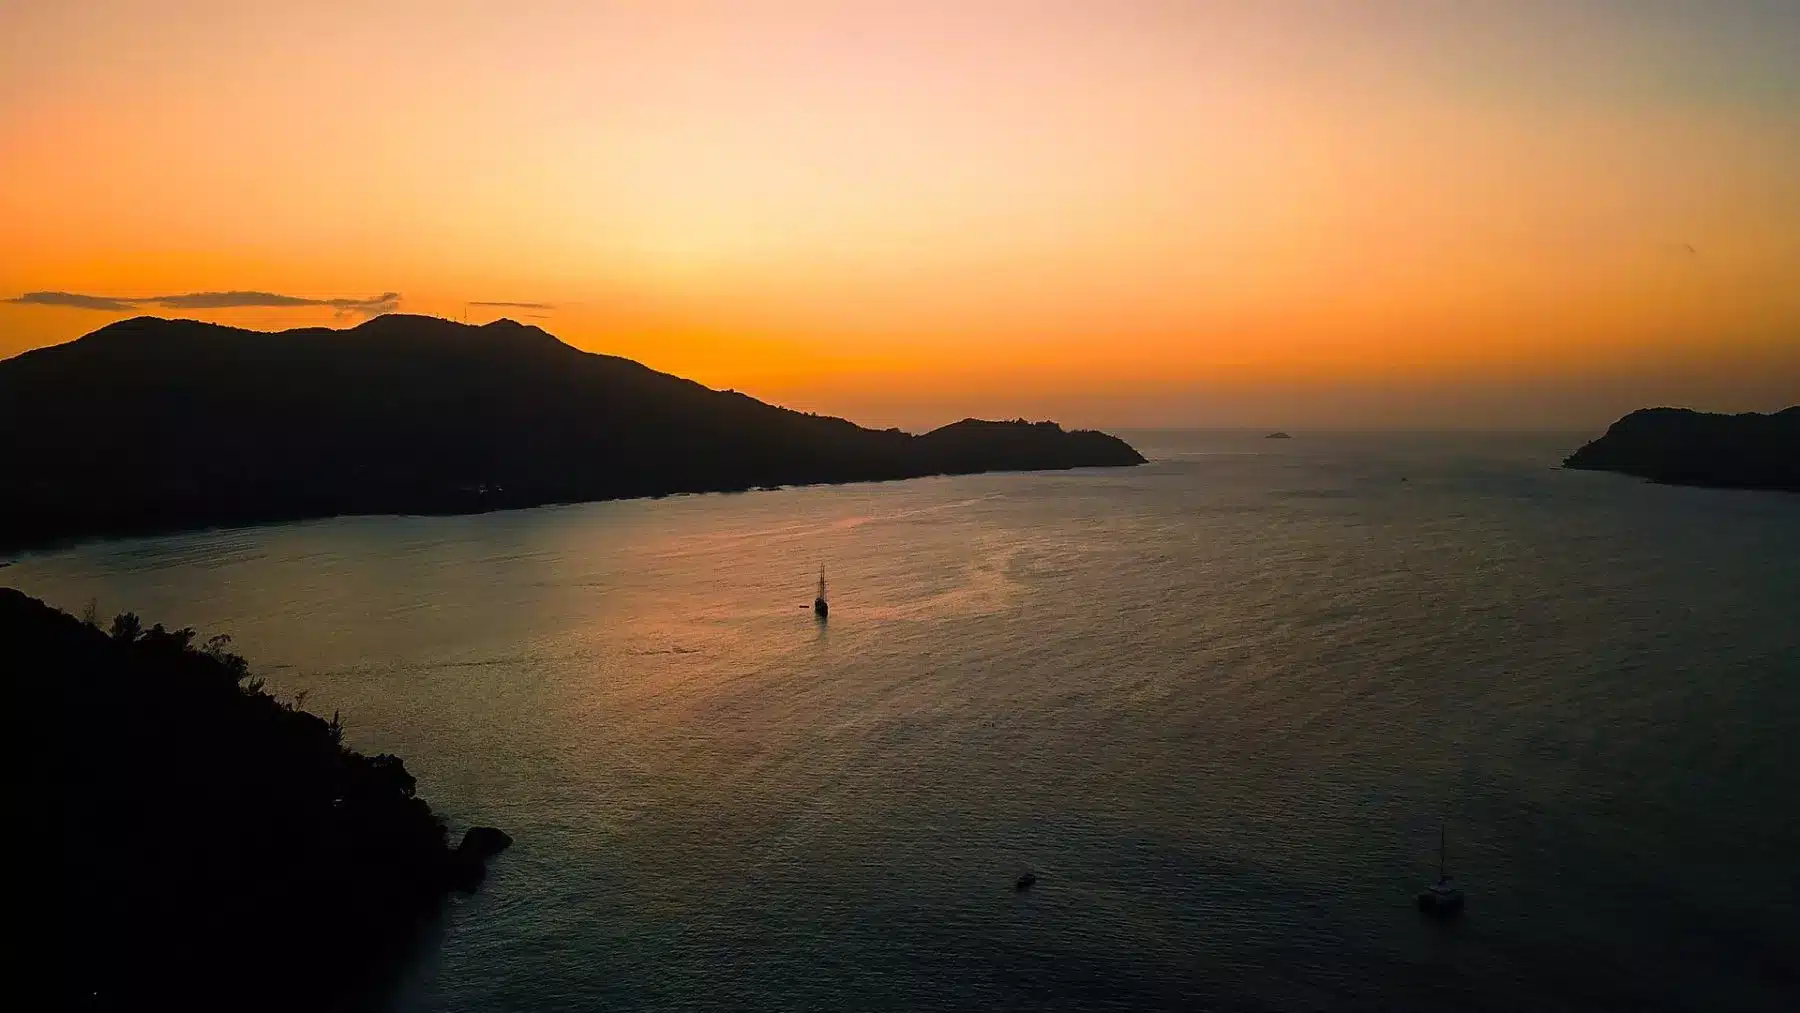 Luftaufnahme eines ruhigen Meeres bei Sonnenuntergang mit der Silhouette von Hügeln am Horizont und verstreuten Segelbooten auf dem Wasser, die die dunkelorangen Farbtöne des Himmels reflektieren.